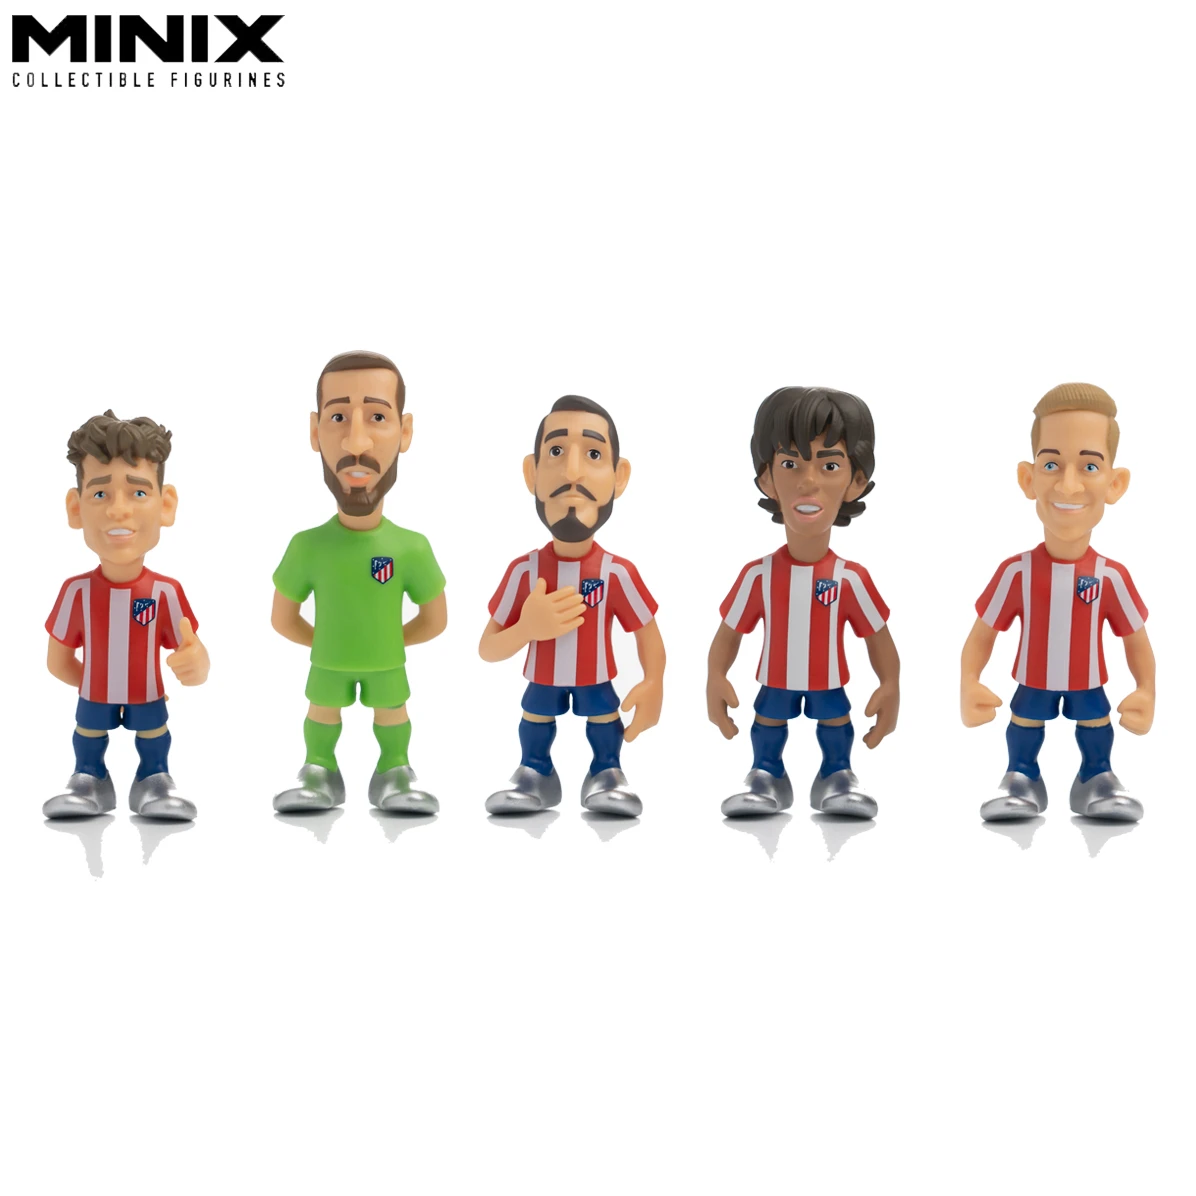 MINIX figura de acción de fútbol coleccionable de FI AT Madr, figura de  jugador de fútbol de dibujos animados, modelo deportivo, muñeca, estrella  de fútbol, juguetes, recuerdo para fanáticos| | - AliExpress